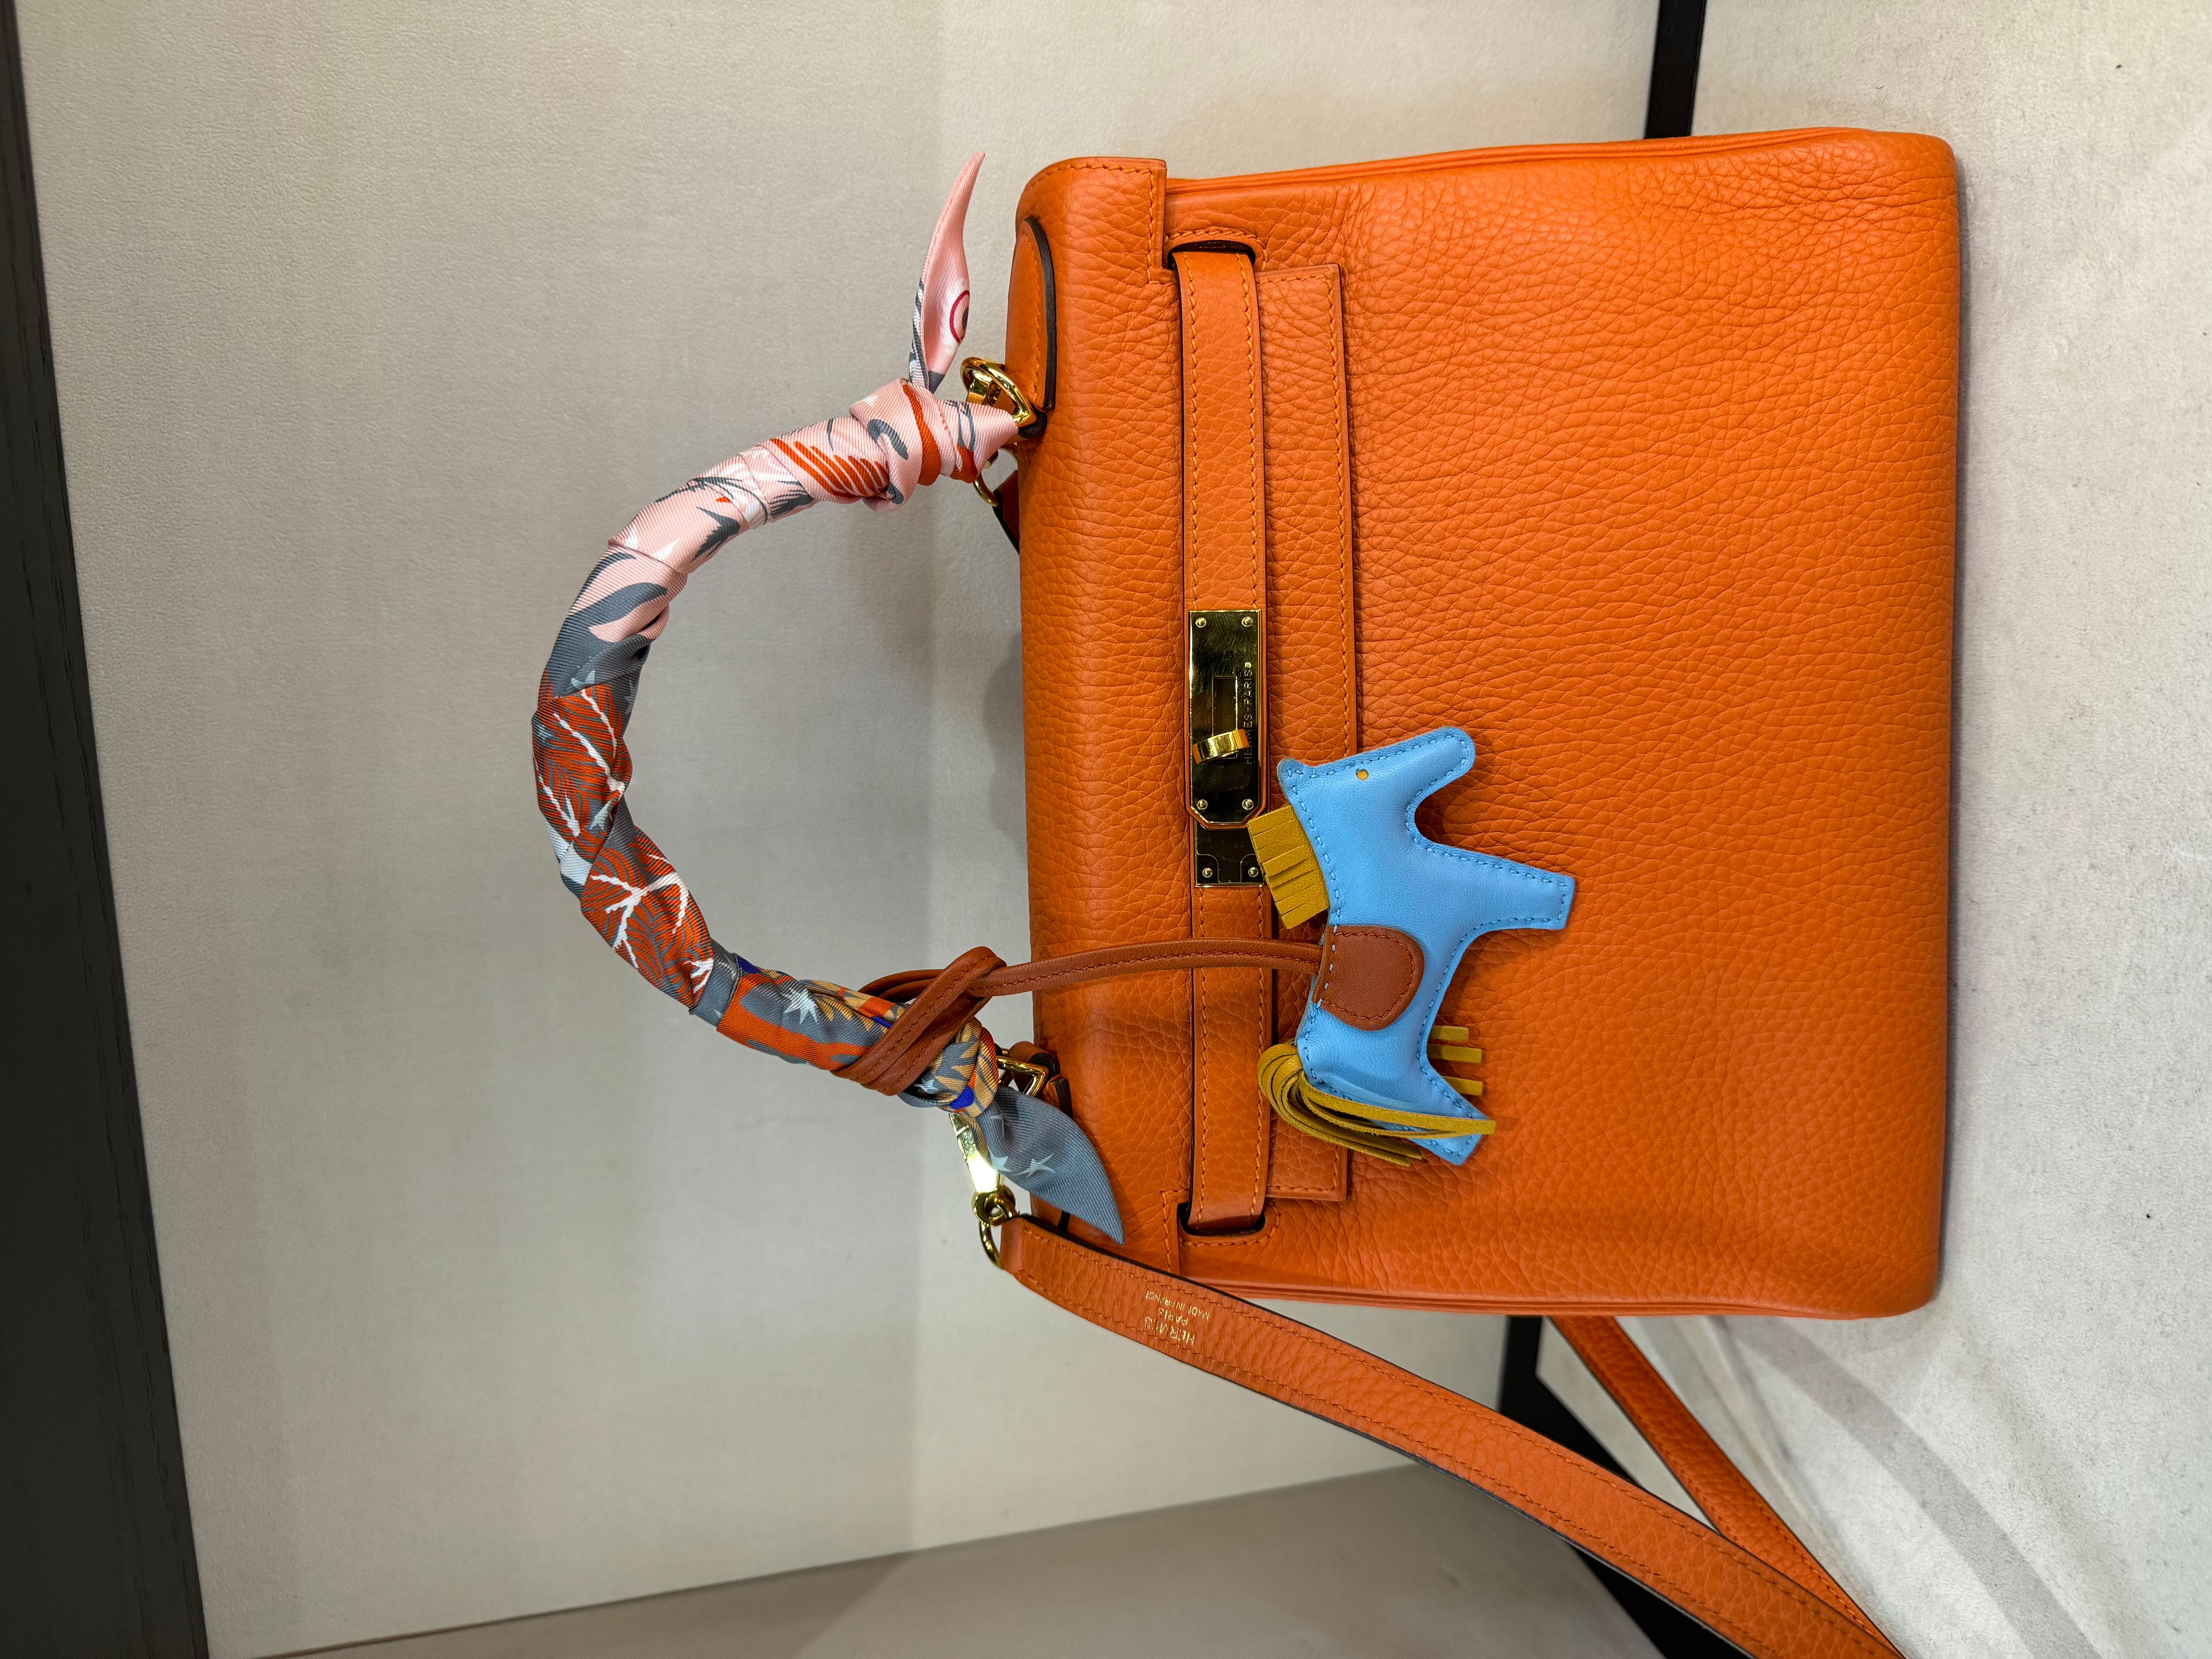 Hermes Kelly 28 Orange Taurillion Clemence Leather Gold Hardware Retourne Bag.
Un sac si désirable pour un look Hermès classique, avec la quincaillerie dorée encore plus rare. 

Le modèle Kelly est connu pour son design simple et son élégance